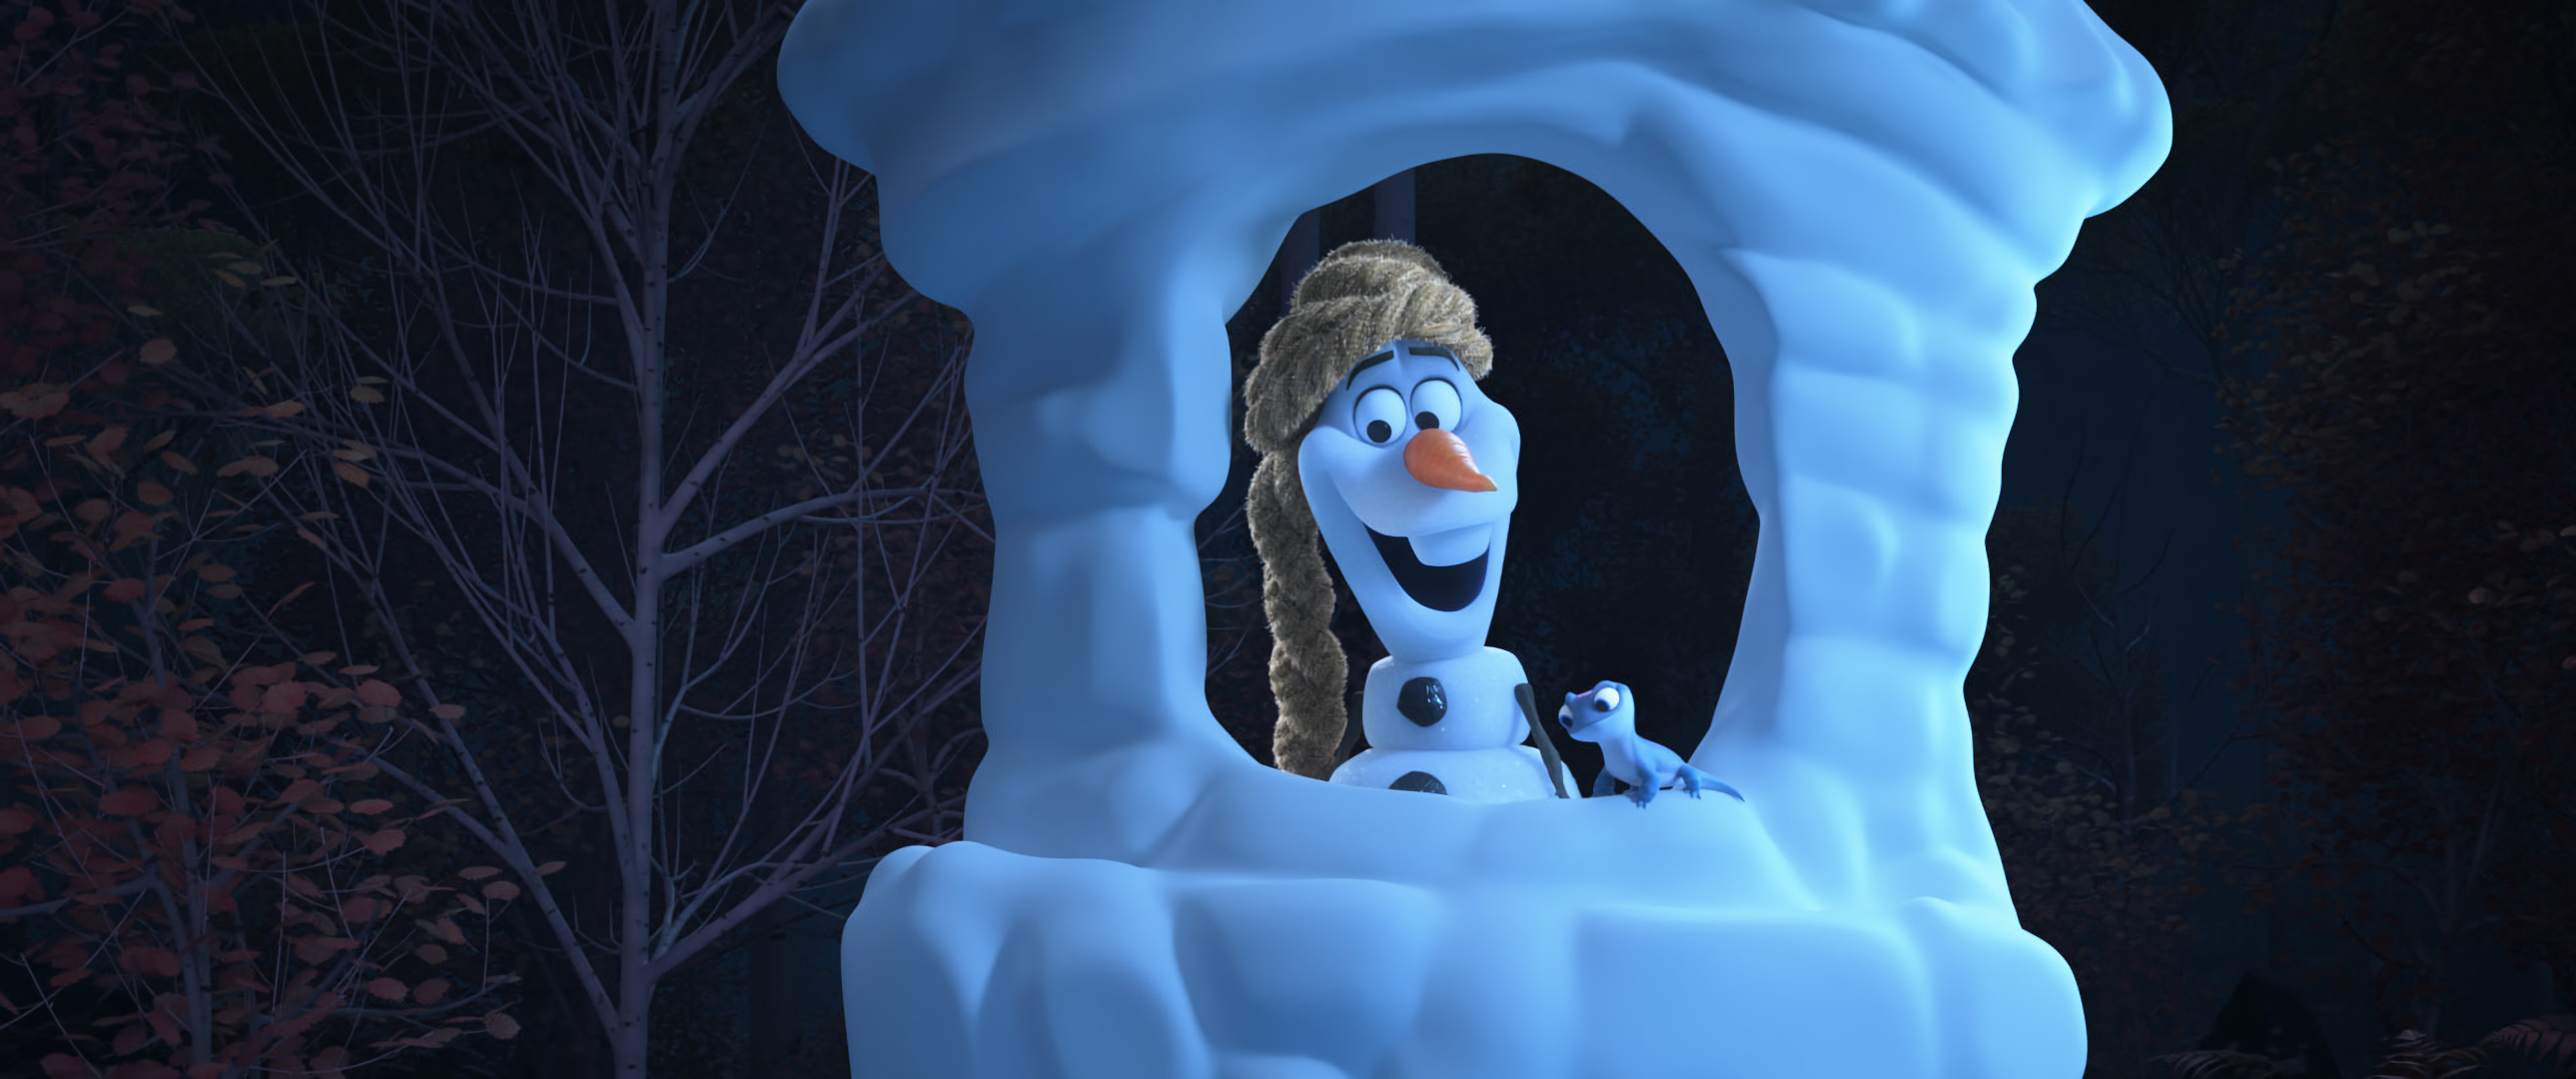 70+ Olaf (Frozen) Fondos de pantalla HD y Fondos de Escritorio